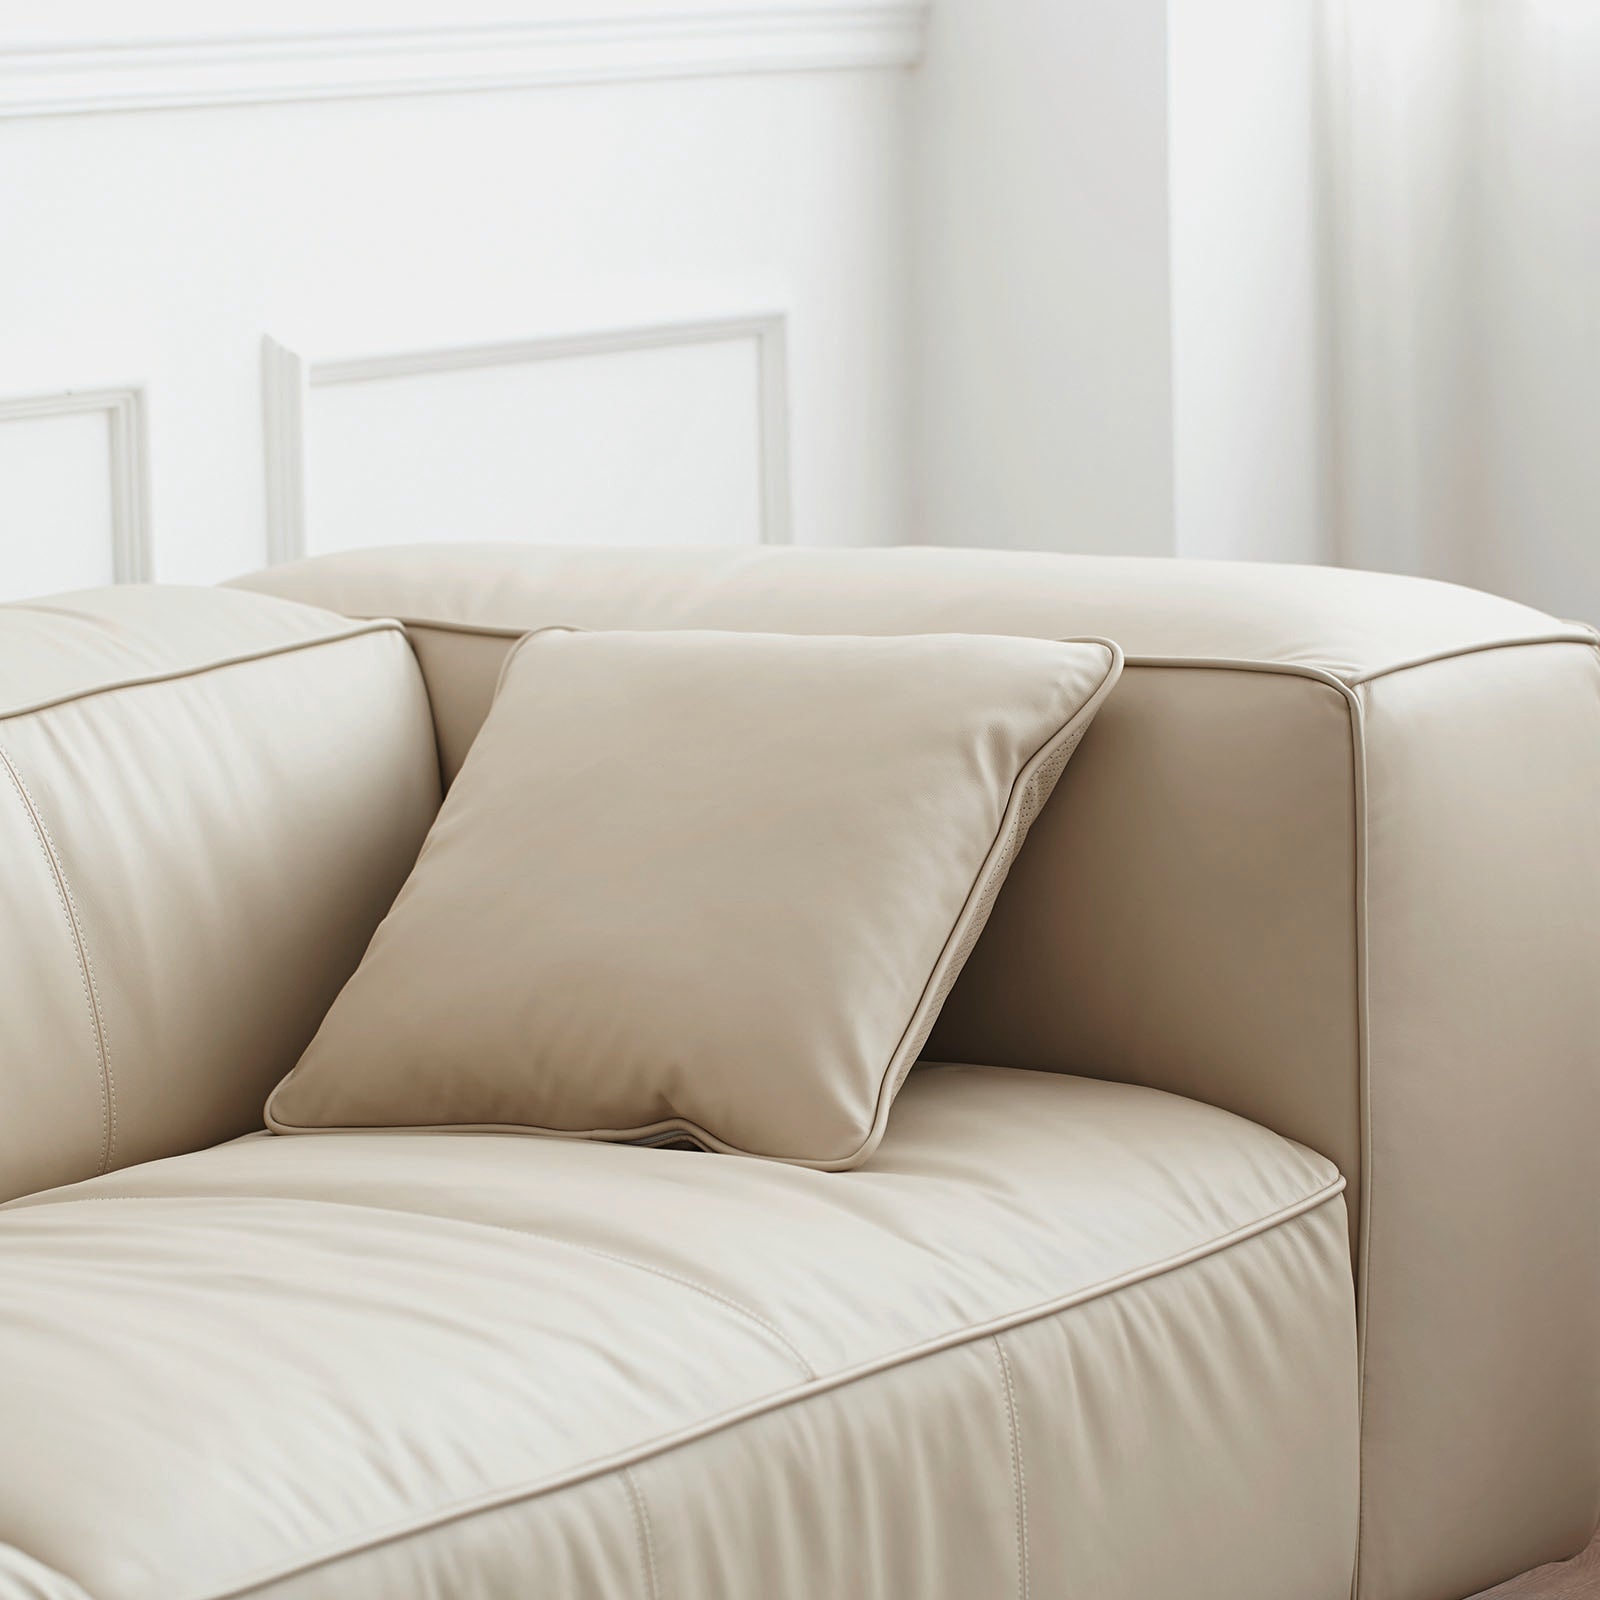 Butter Sofa weich / breite Armlehnen – 5-Sitzer